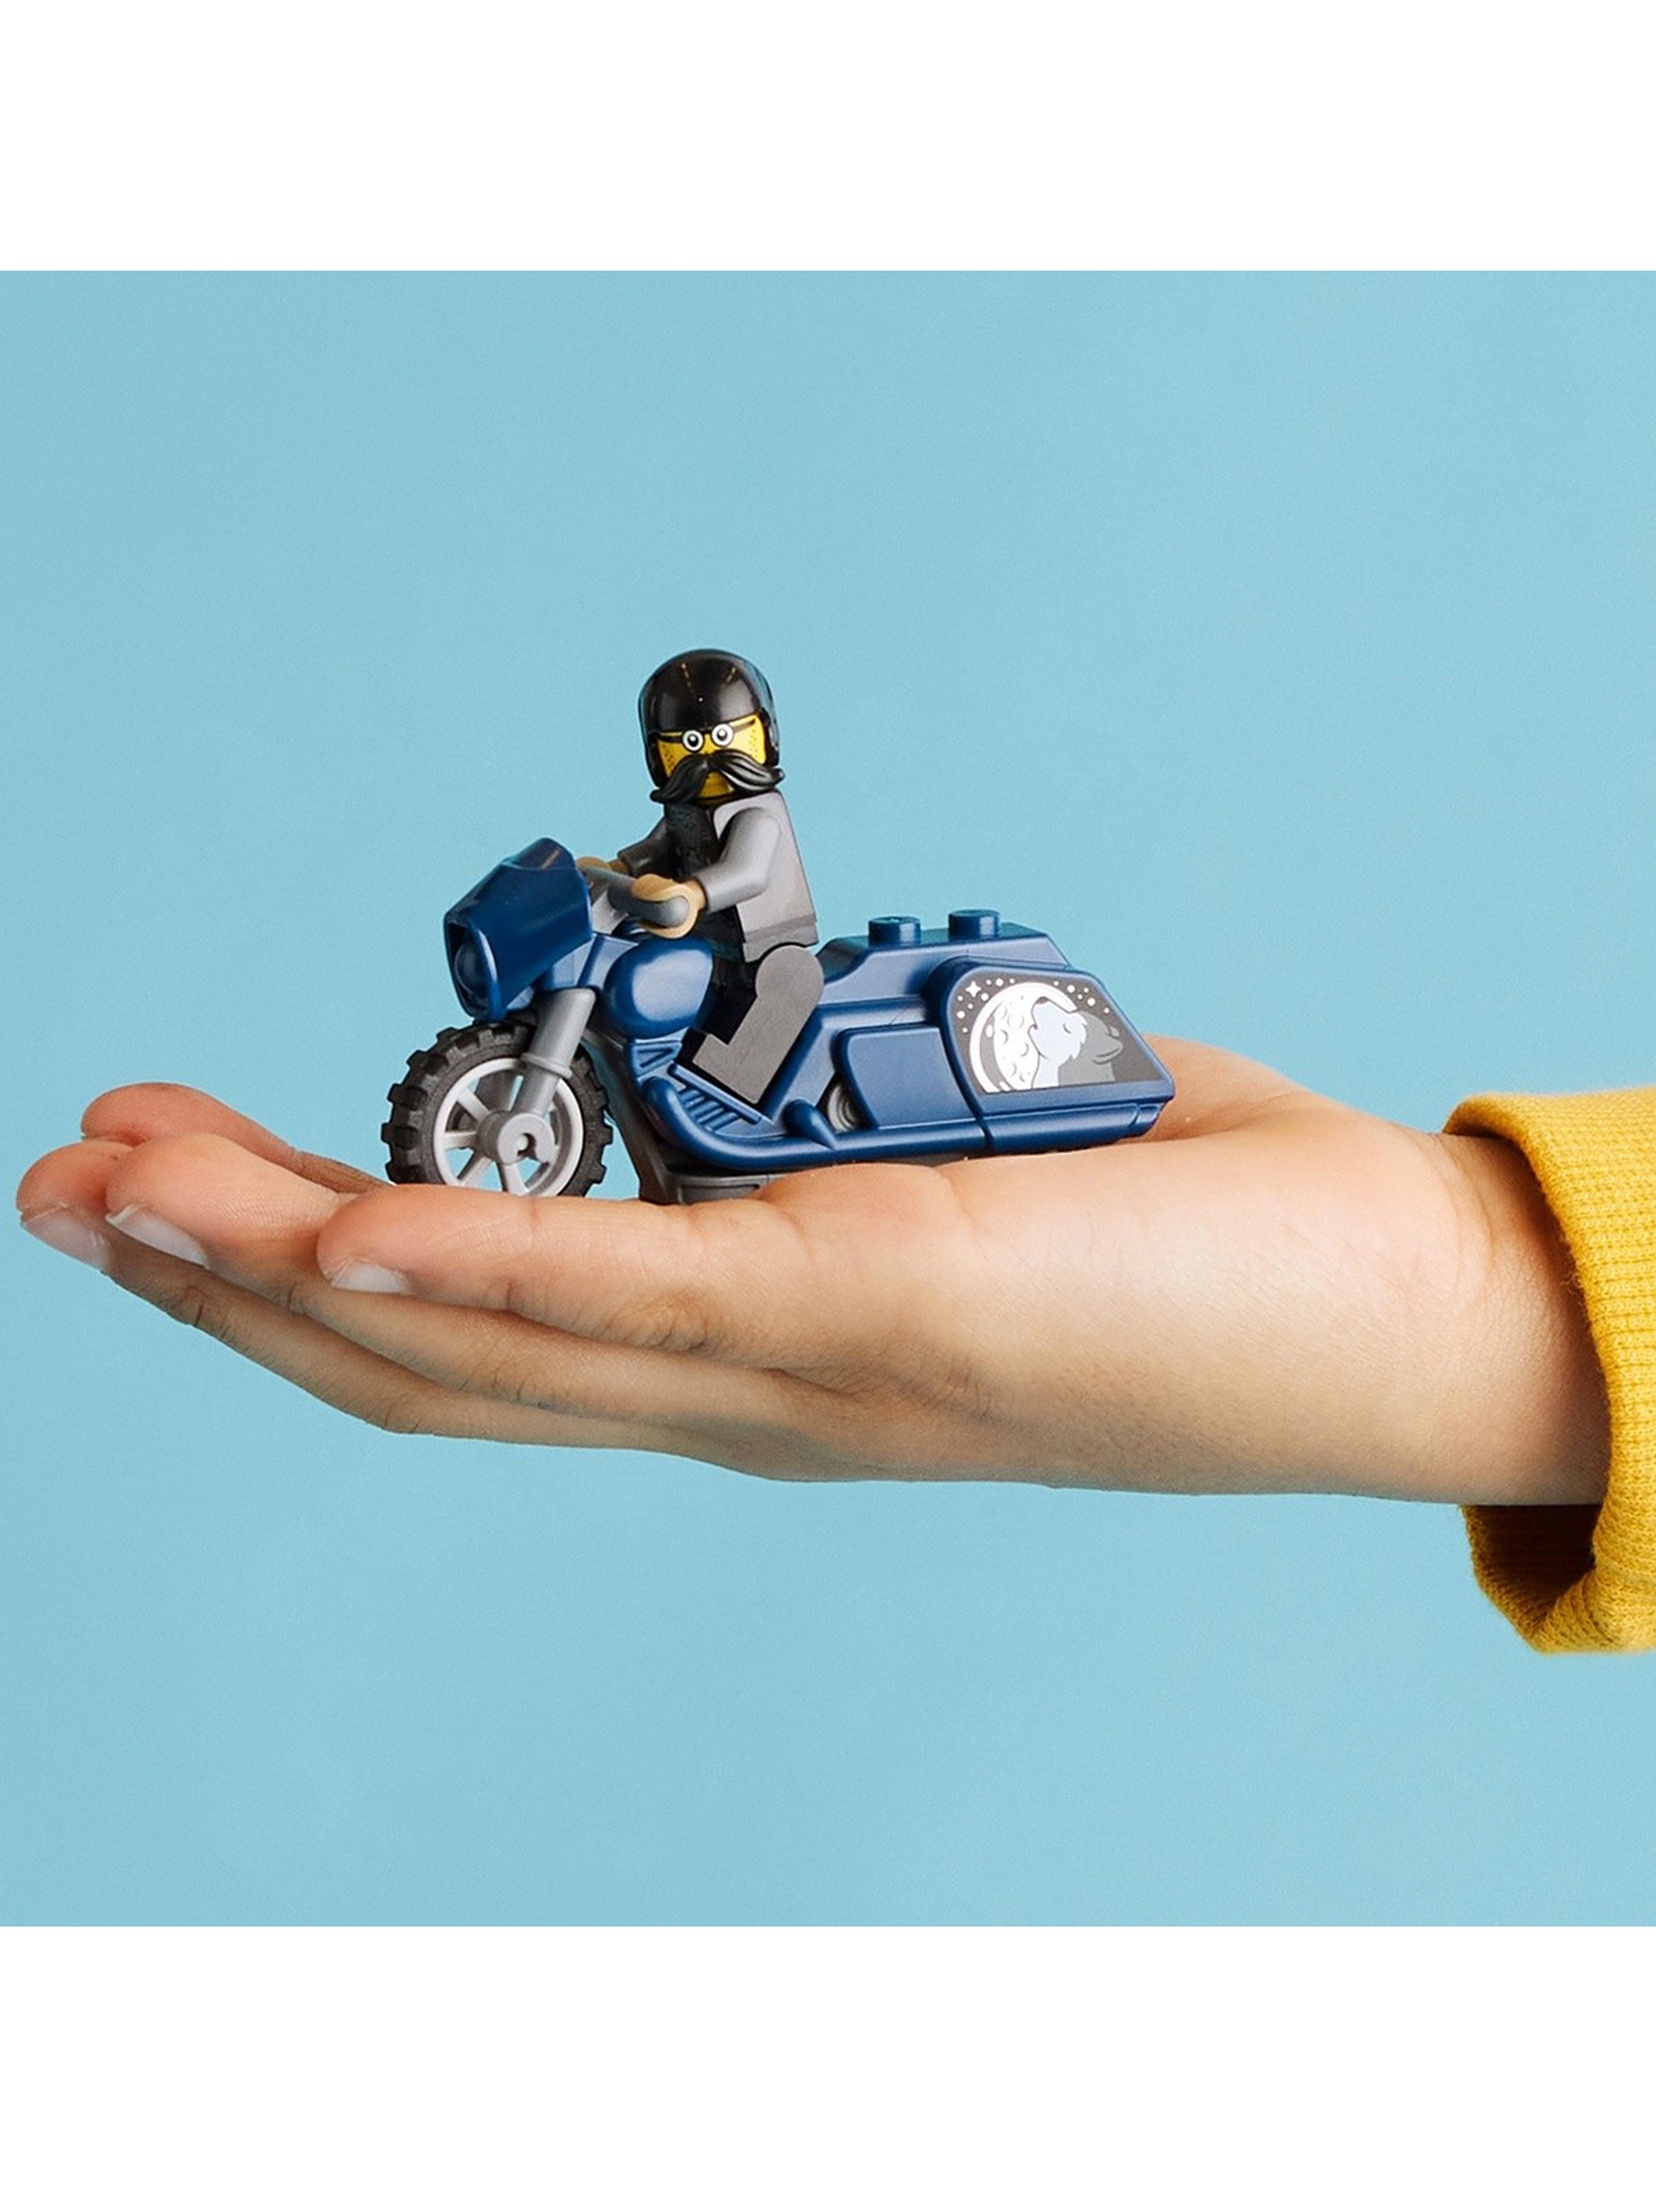 LEGO City - Turystyczny motocykl kaskaderski 60331 - 10 elementów, wiek 5+